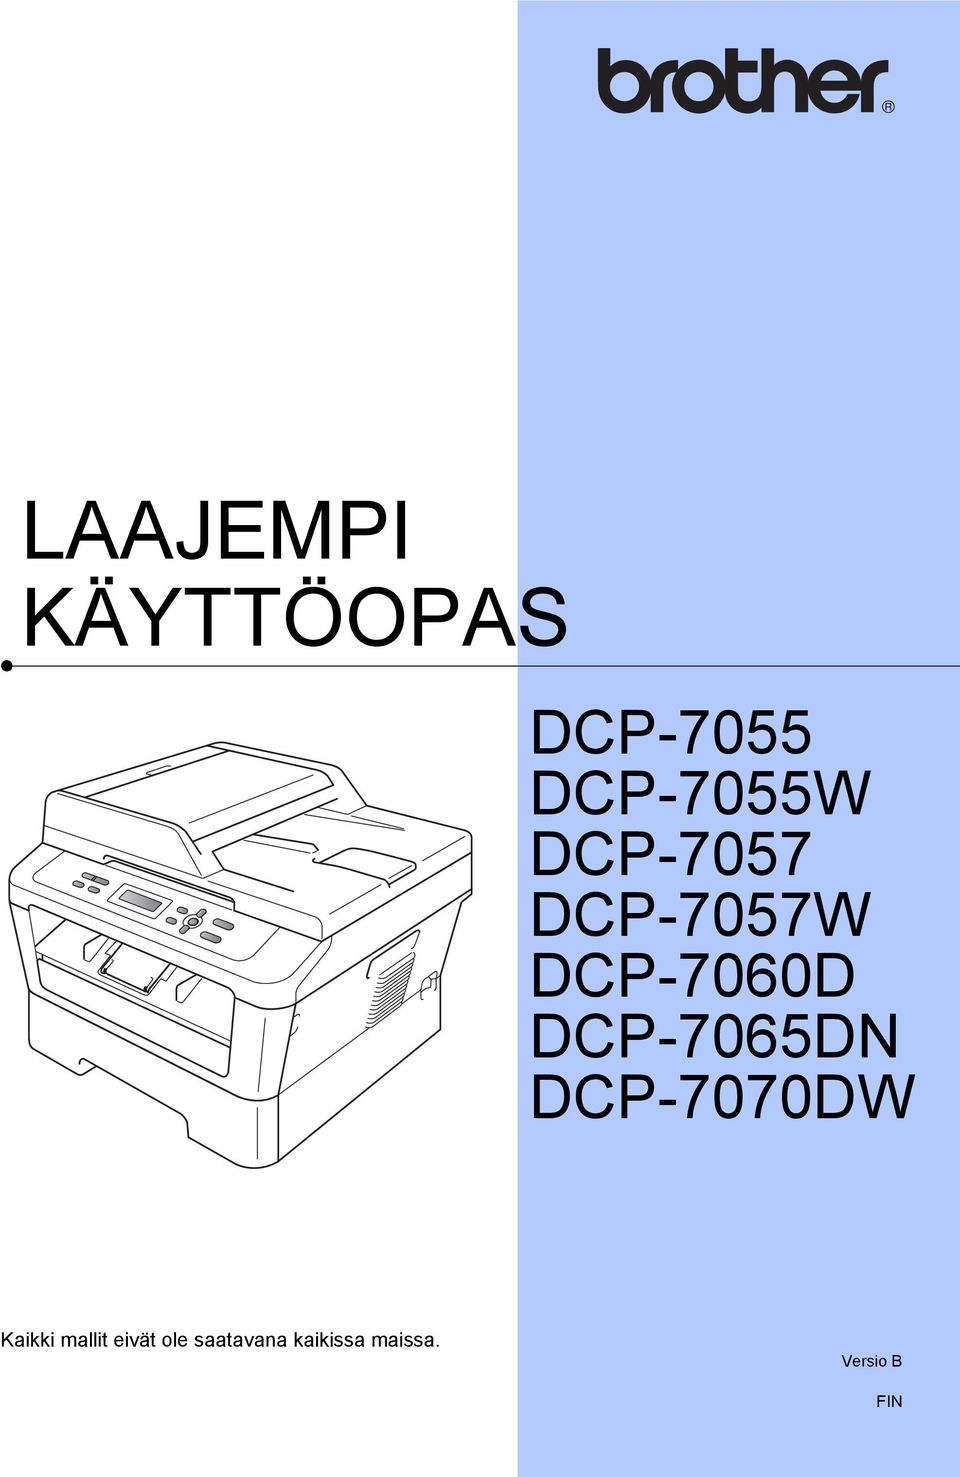 DCP-7065DN DCP-7070DW Kaikki mallit